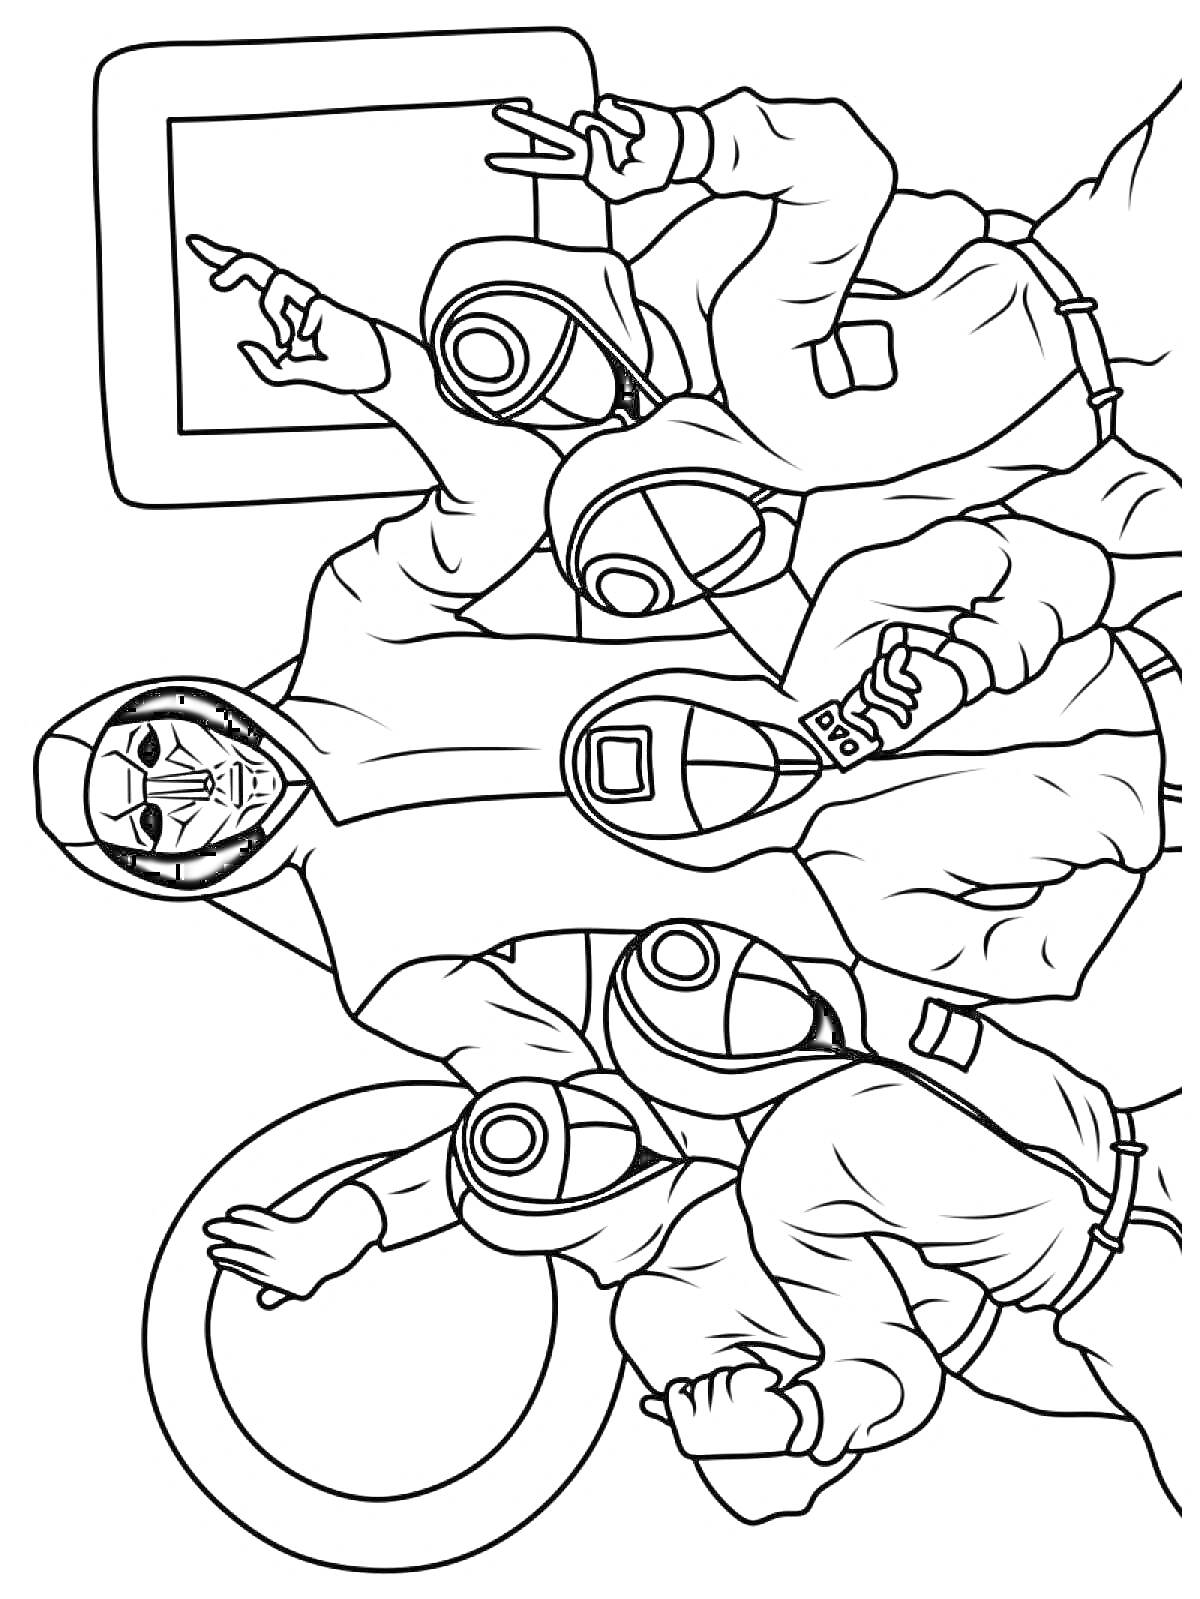 Раскраска Пять участников в костюмах с капюшонами и масками перед символами квадрата, треугольника и круга